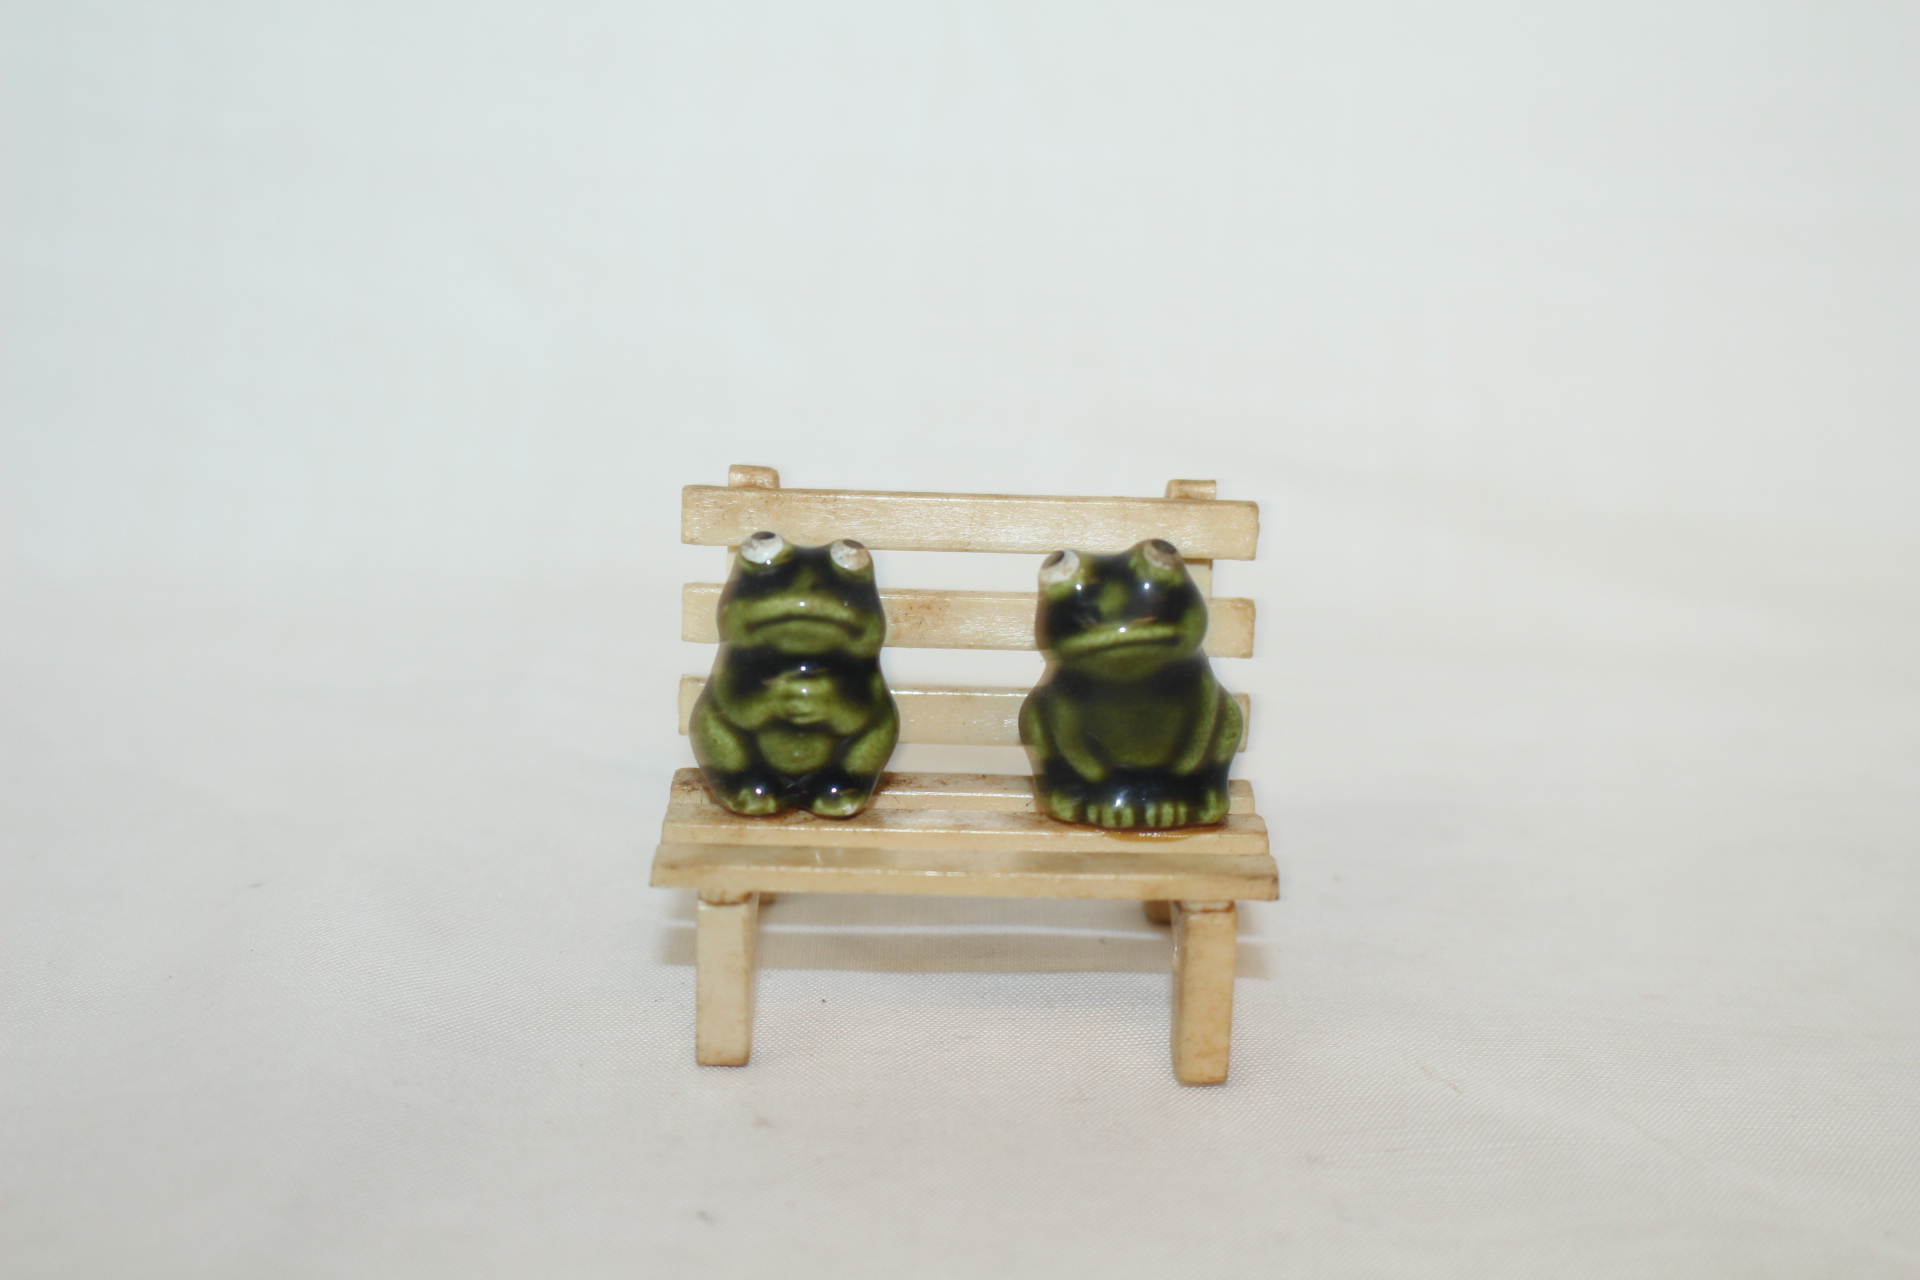 소형크기의 나무의자에 청자 개구리 조각상